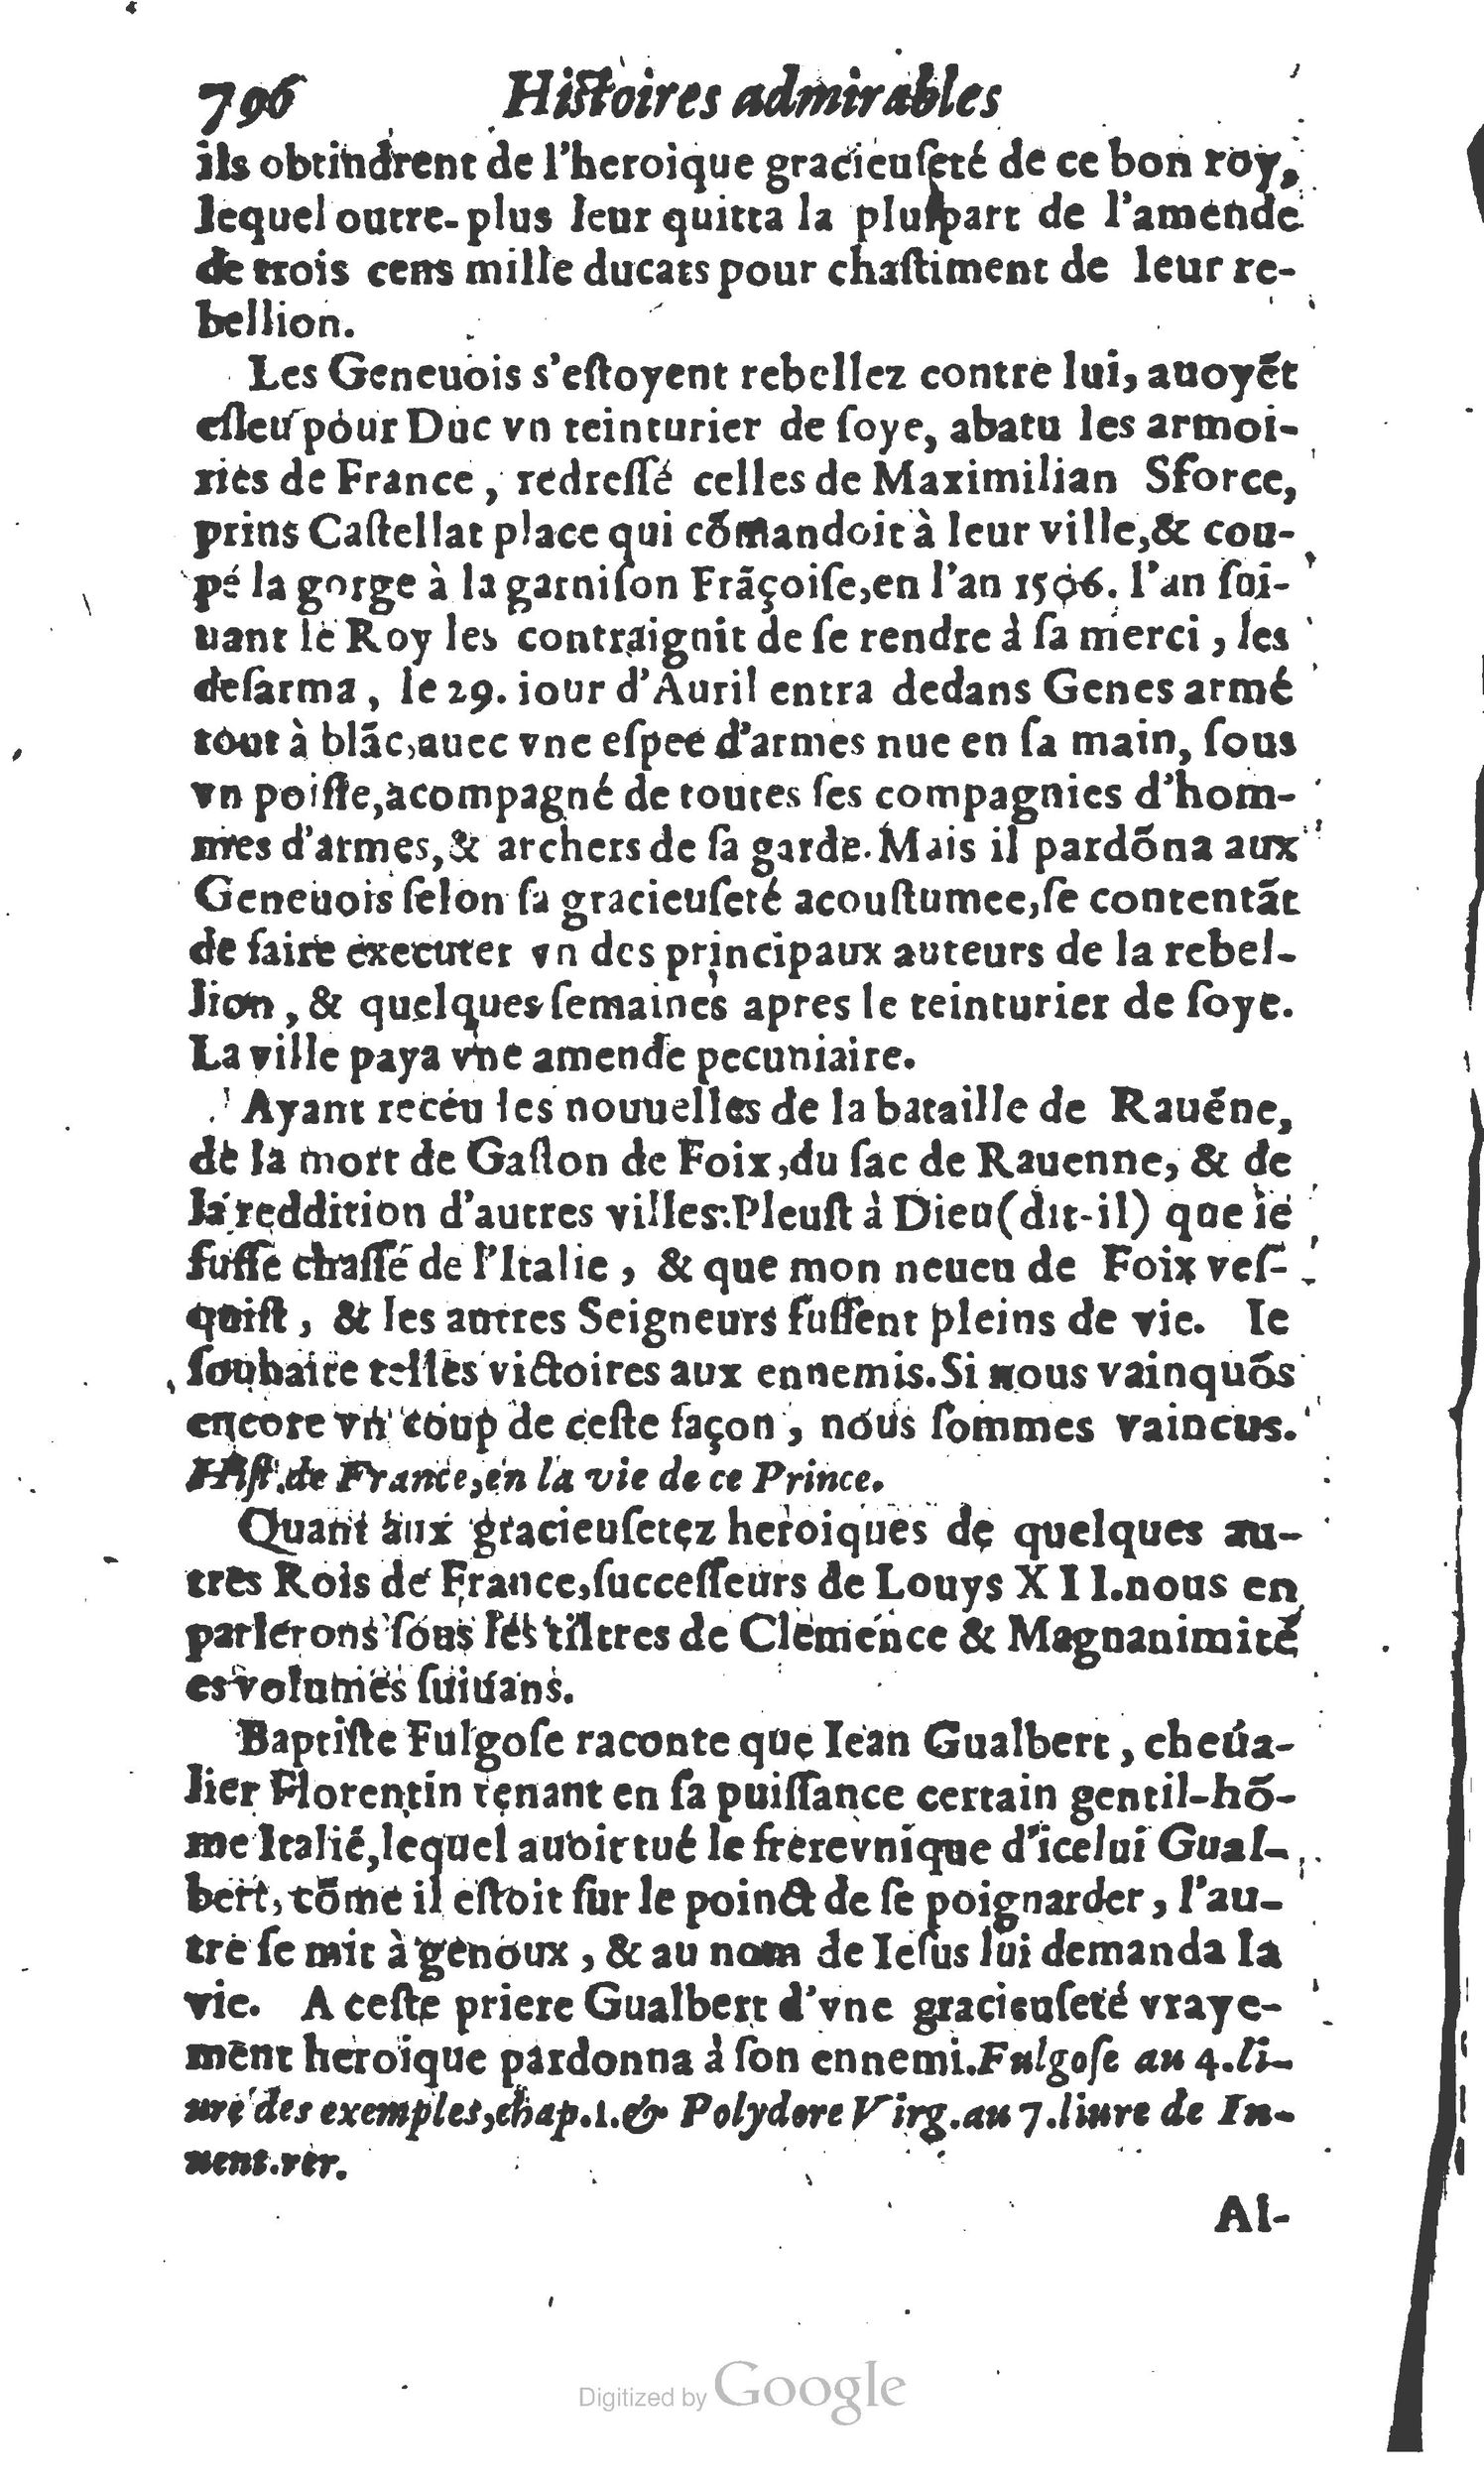 1610 Trésor d’histoires admirables et mémorables de nostre temps Marceau Princeton_Page_0817.jpg